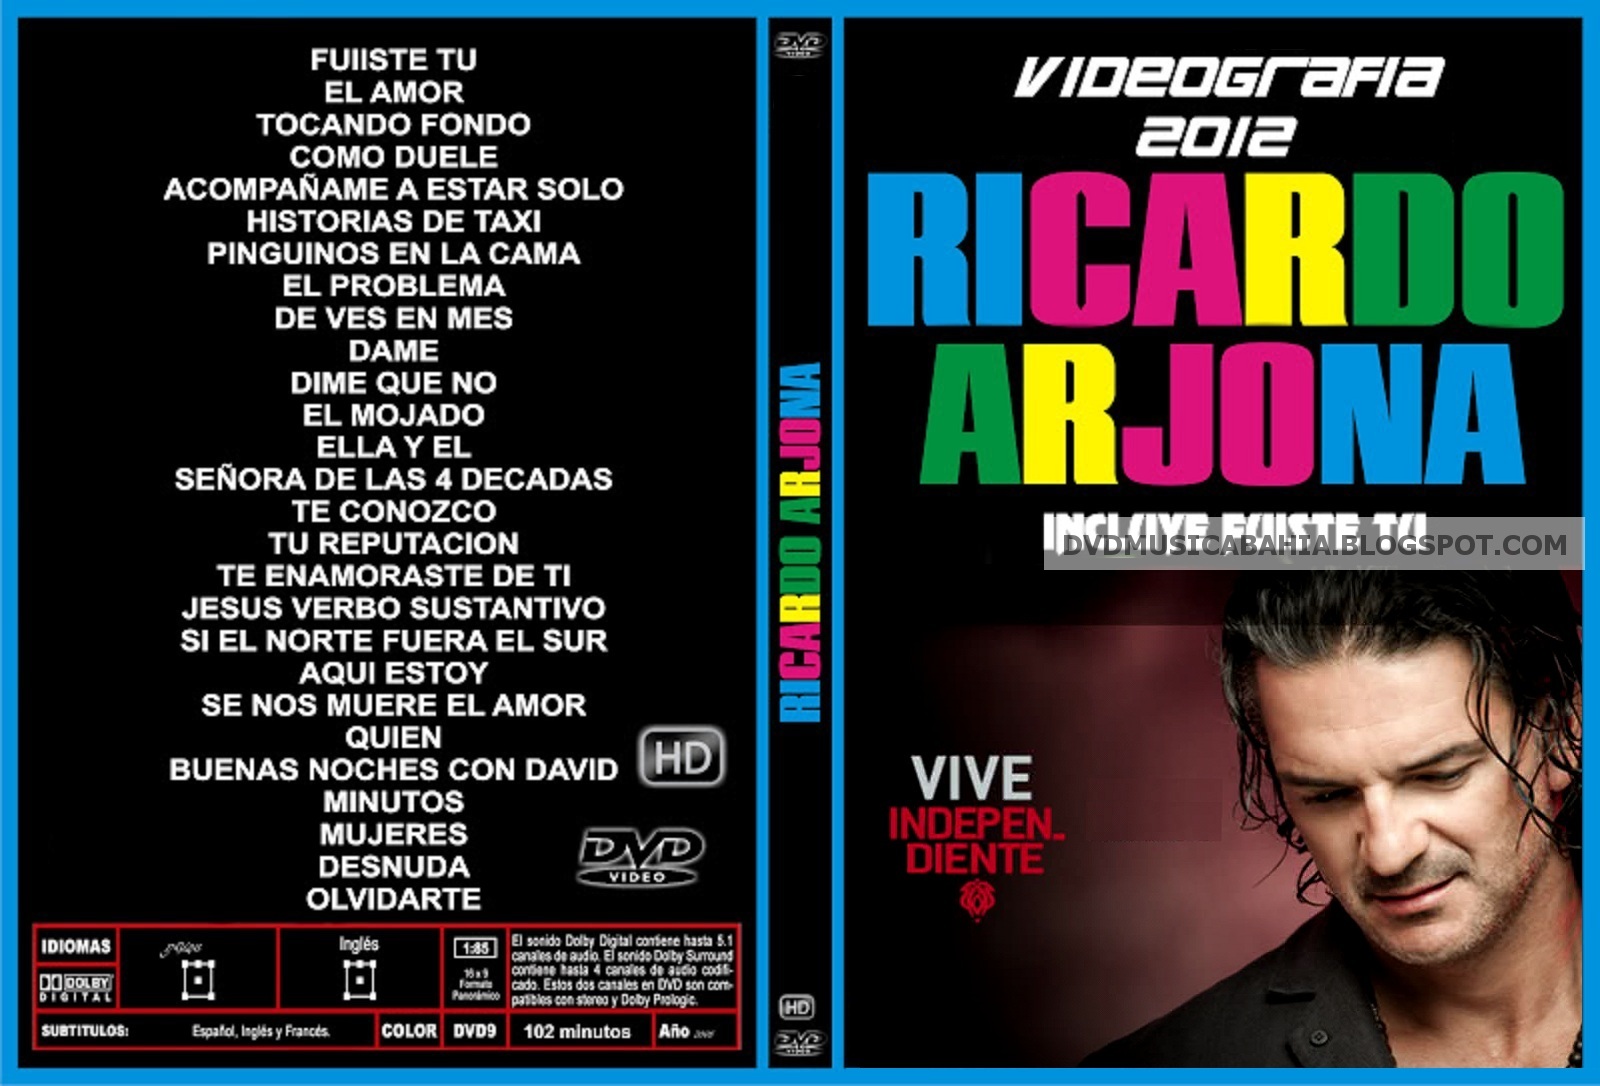 LOS MEJORES DVD DE MUSICA Y MAS....!!!!: ARJONA - VIDEOGRAFIA 2012 (2012)